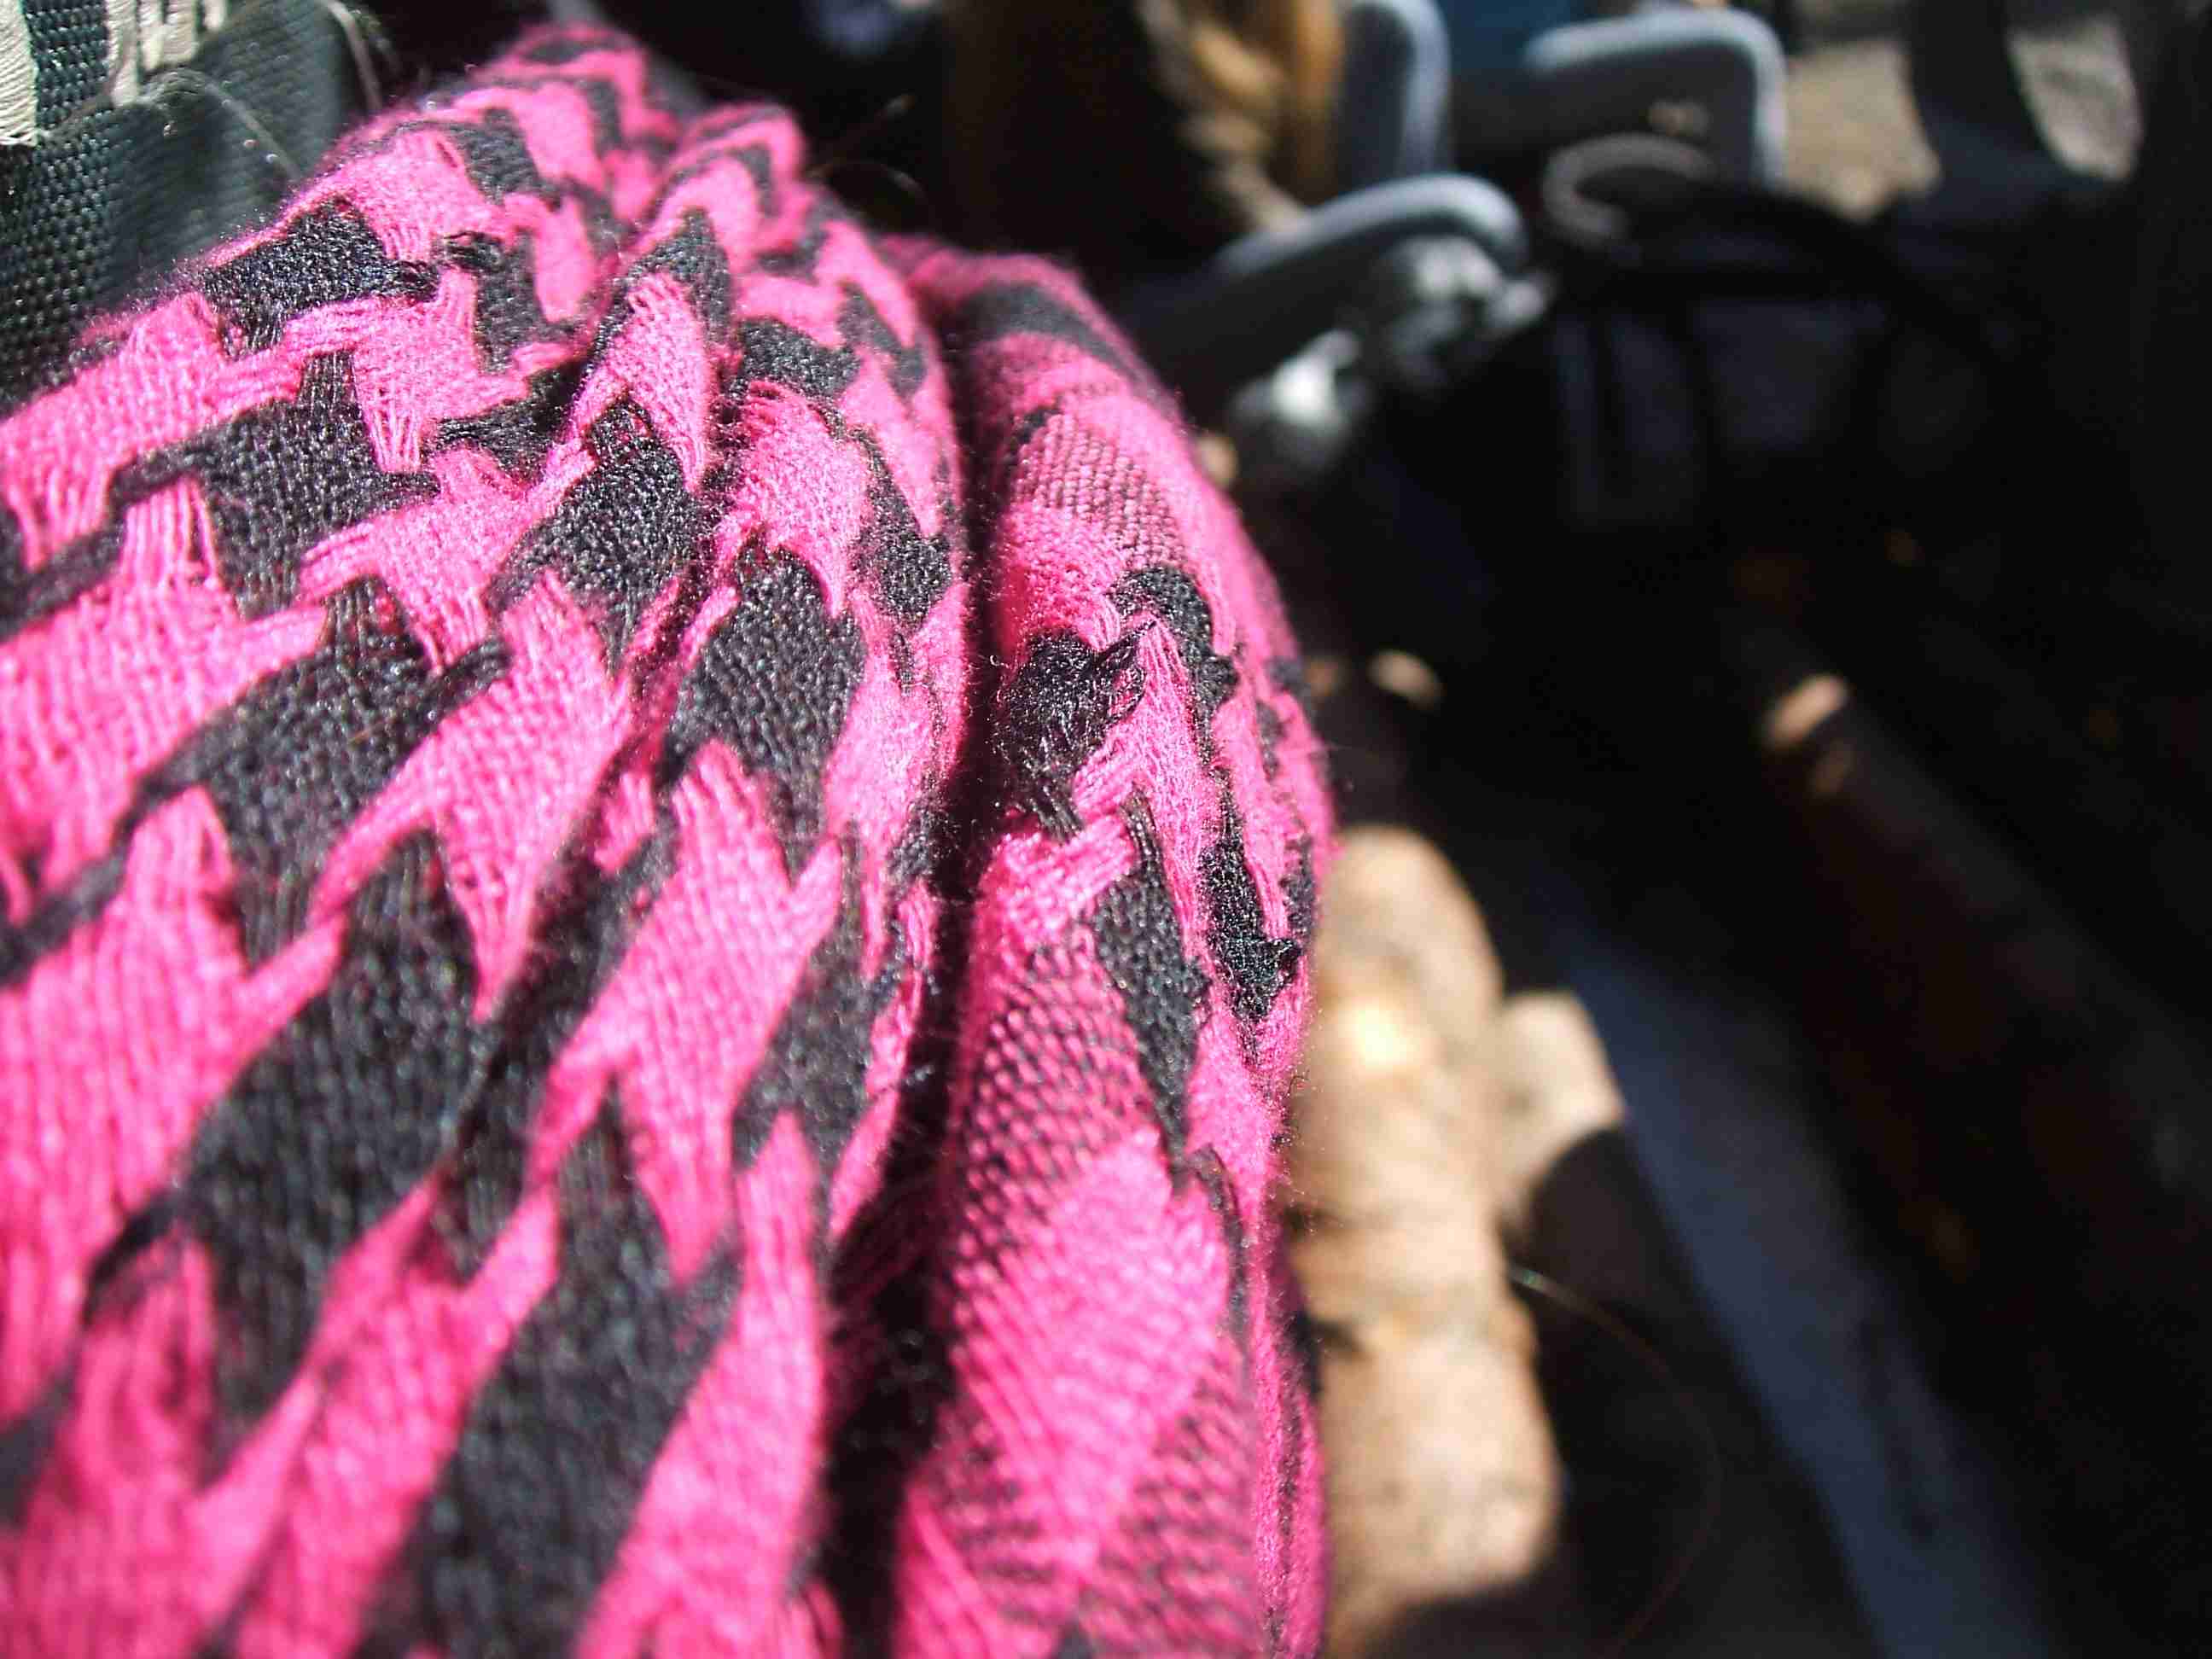 šátek přehozený přes batohy